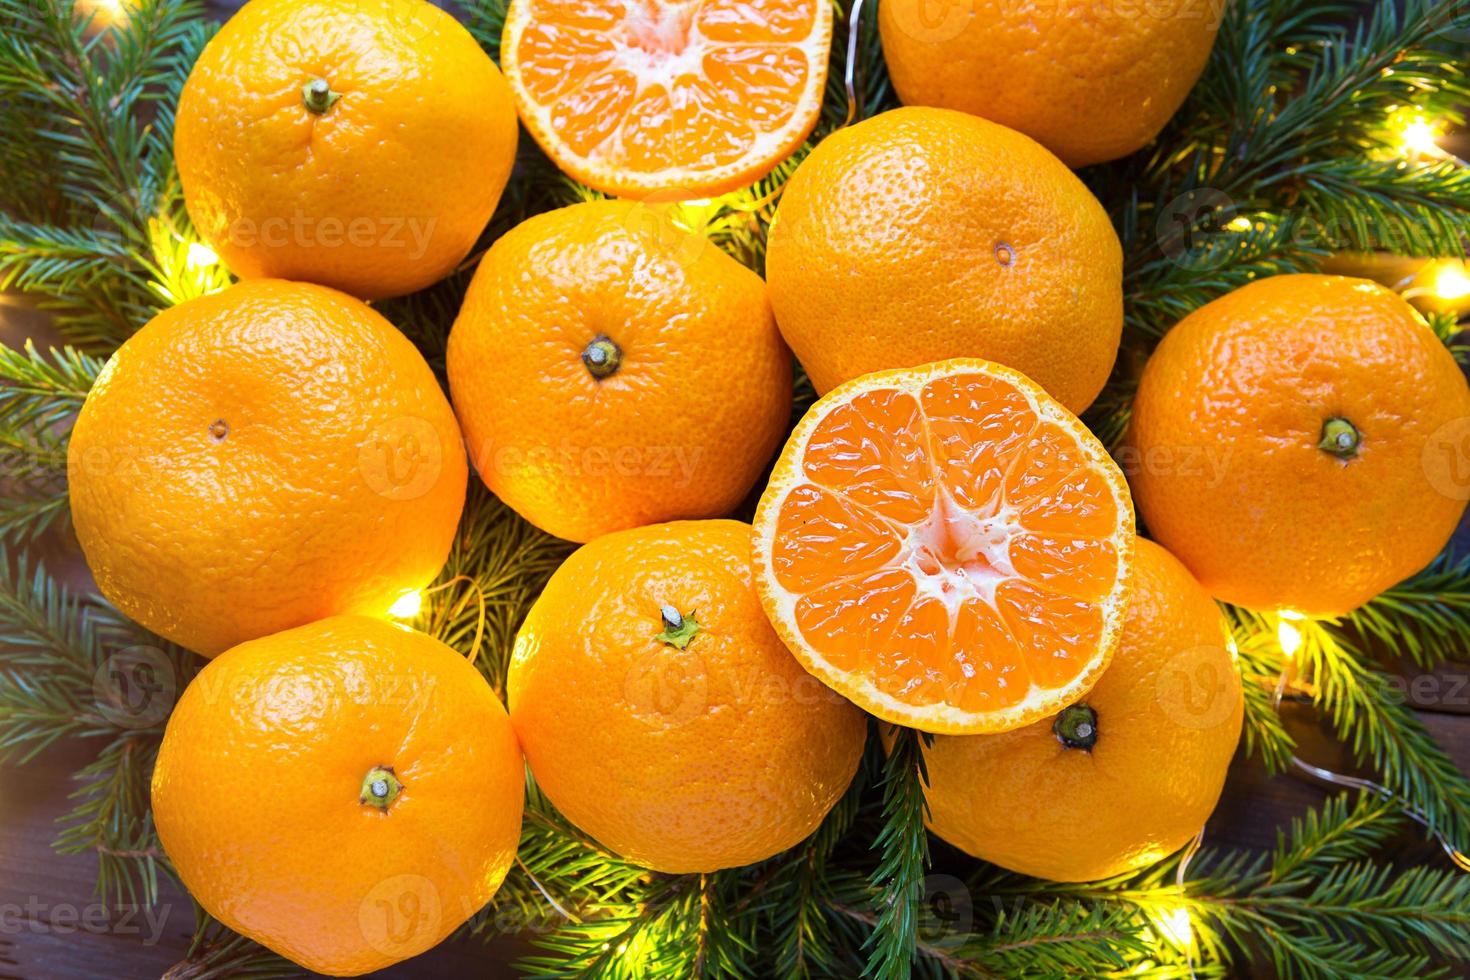 mandarinas frescas en luces de guirnaldas, en ramas de abeto y oropel - fondo brillante de año nuevo. la mitad de una naranja, aroma cítrico de la fiesta. navidad, año nuevo. espacio para texto. foto